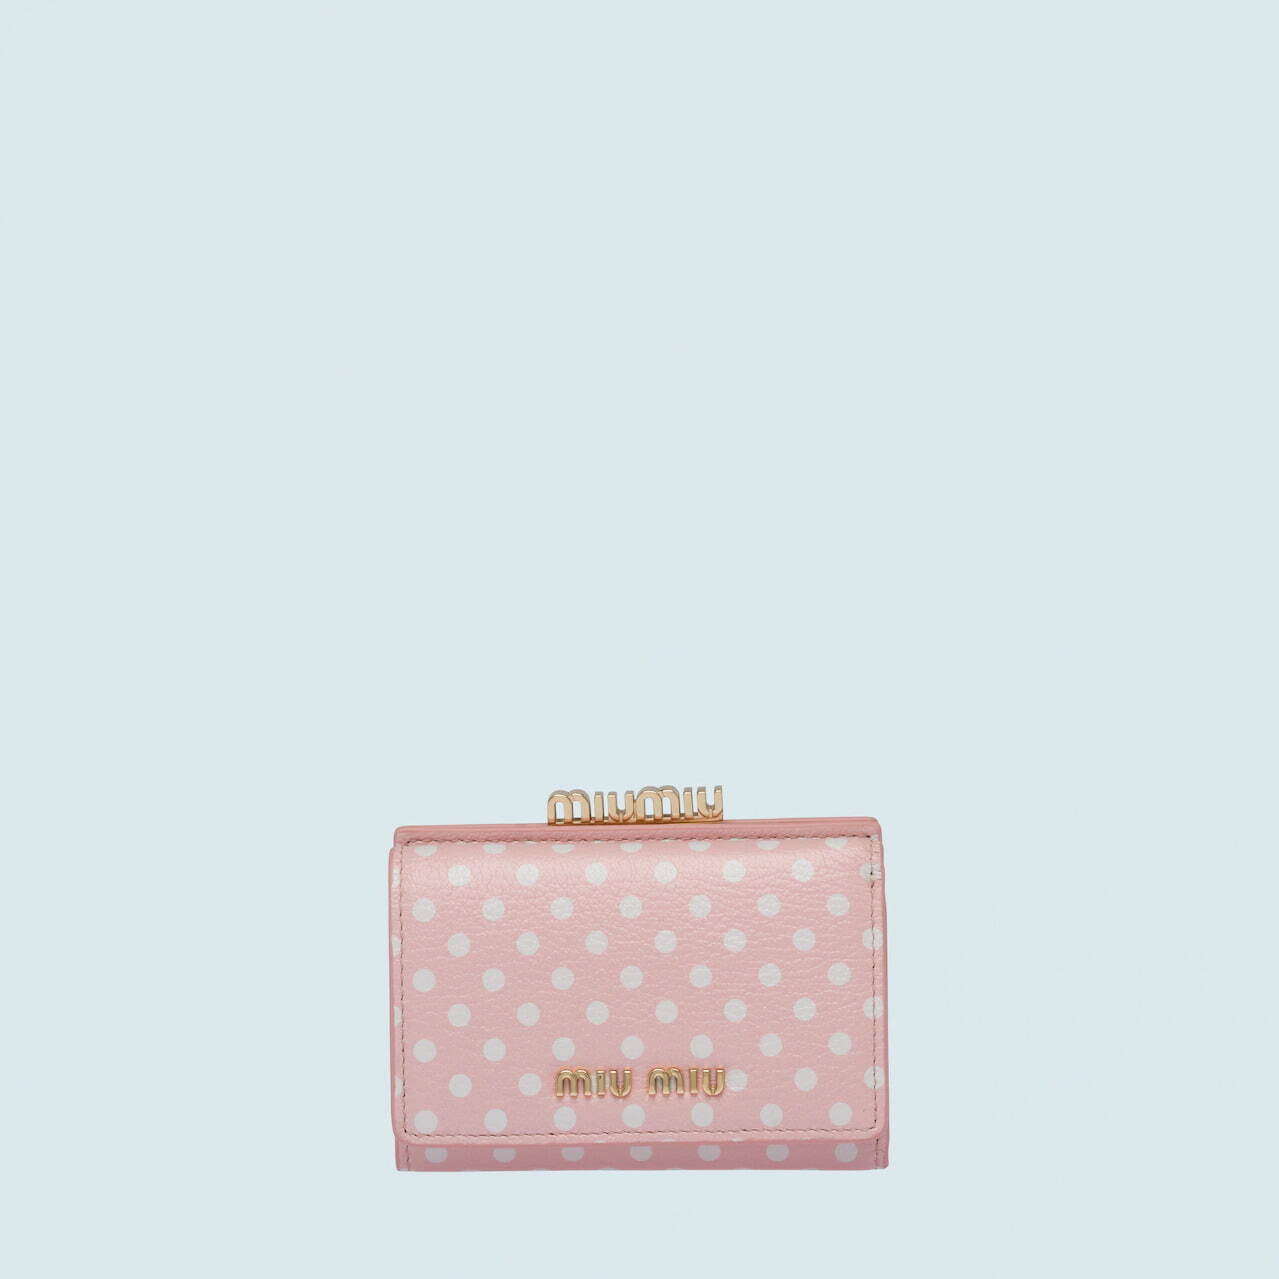 ミュウミュウ ピンク のミニ財布 ハートモチーフやドット柄 チェーンストラップ付きウォレット ファッションプレス